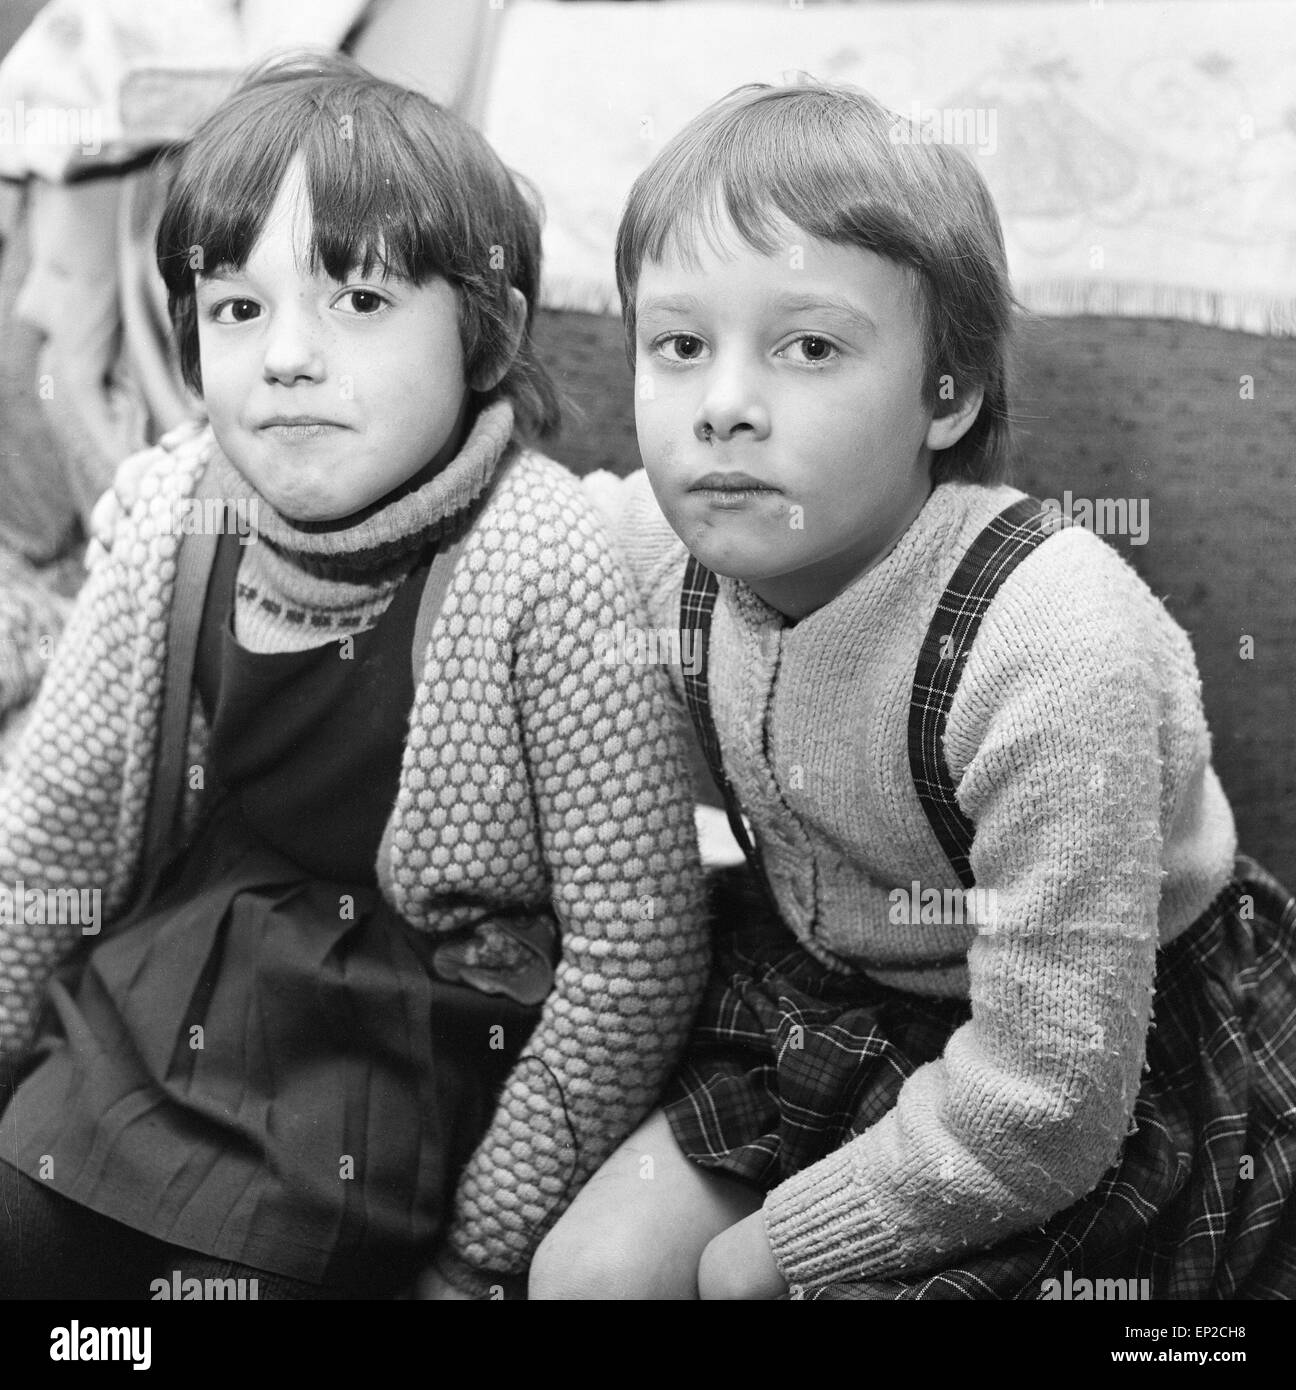 Susan Cornish L Und Cindy Hellpe R Kinder Die Von Norma Bell Und Mary Bell Angegriffen Wurden Abgebildet 18 Dezember 1968 Stockfotografie Alamy